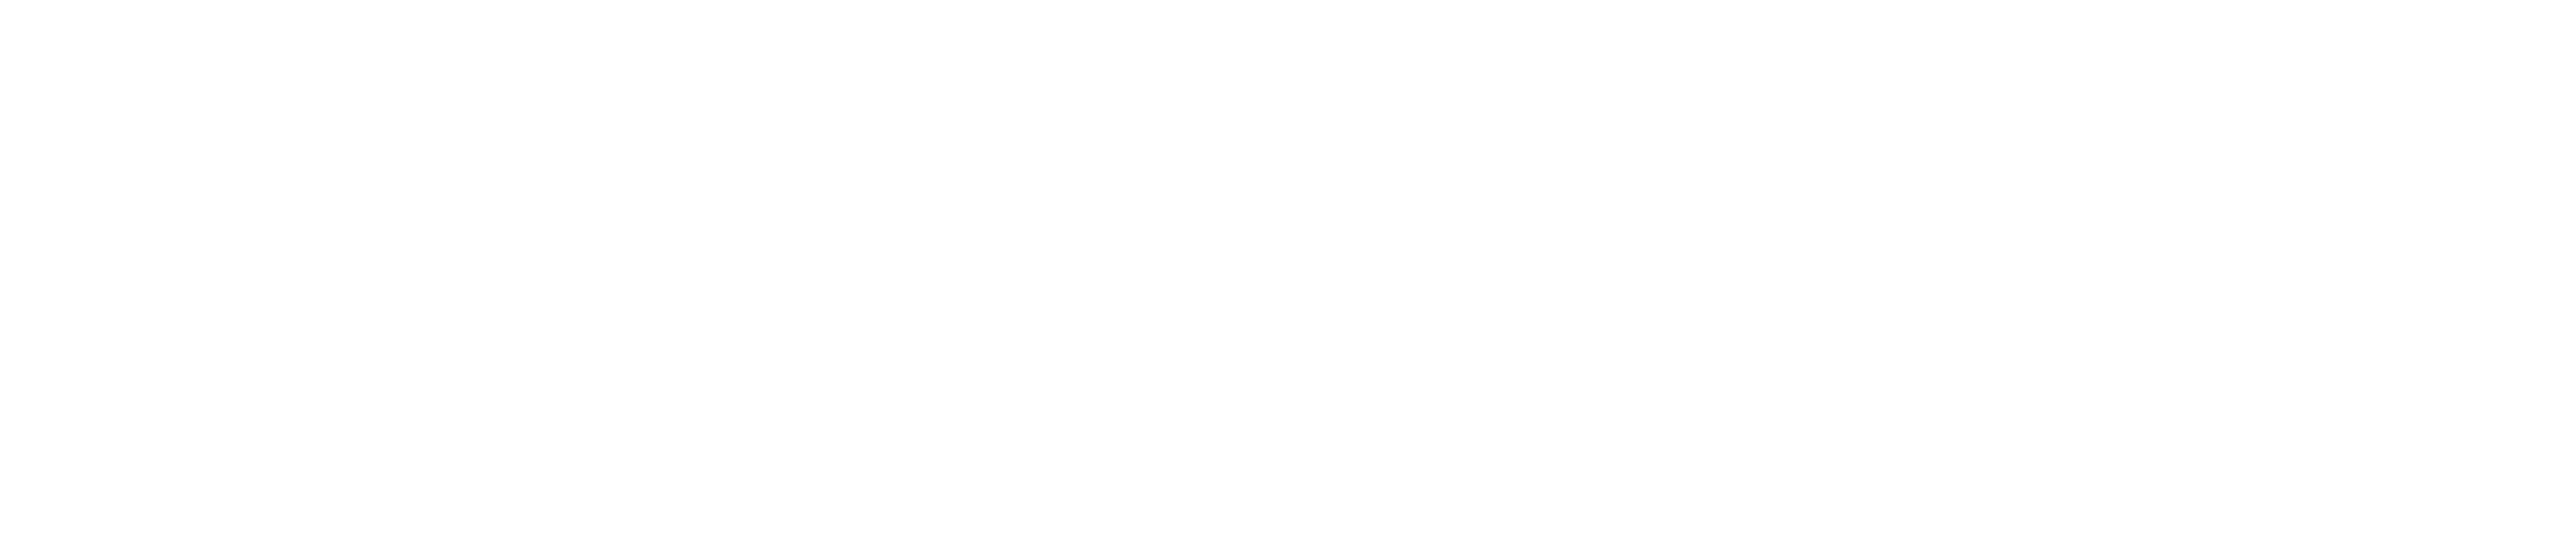 Netgate Logo